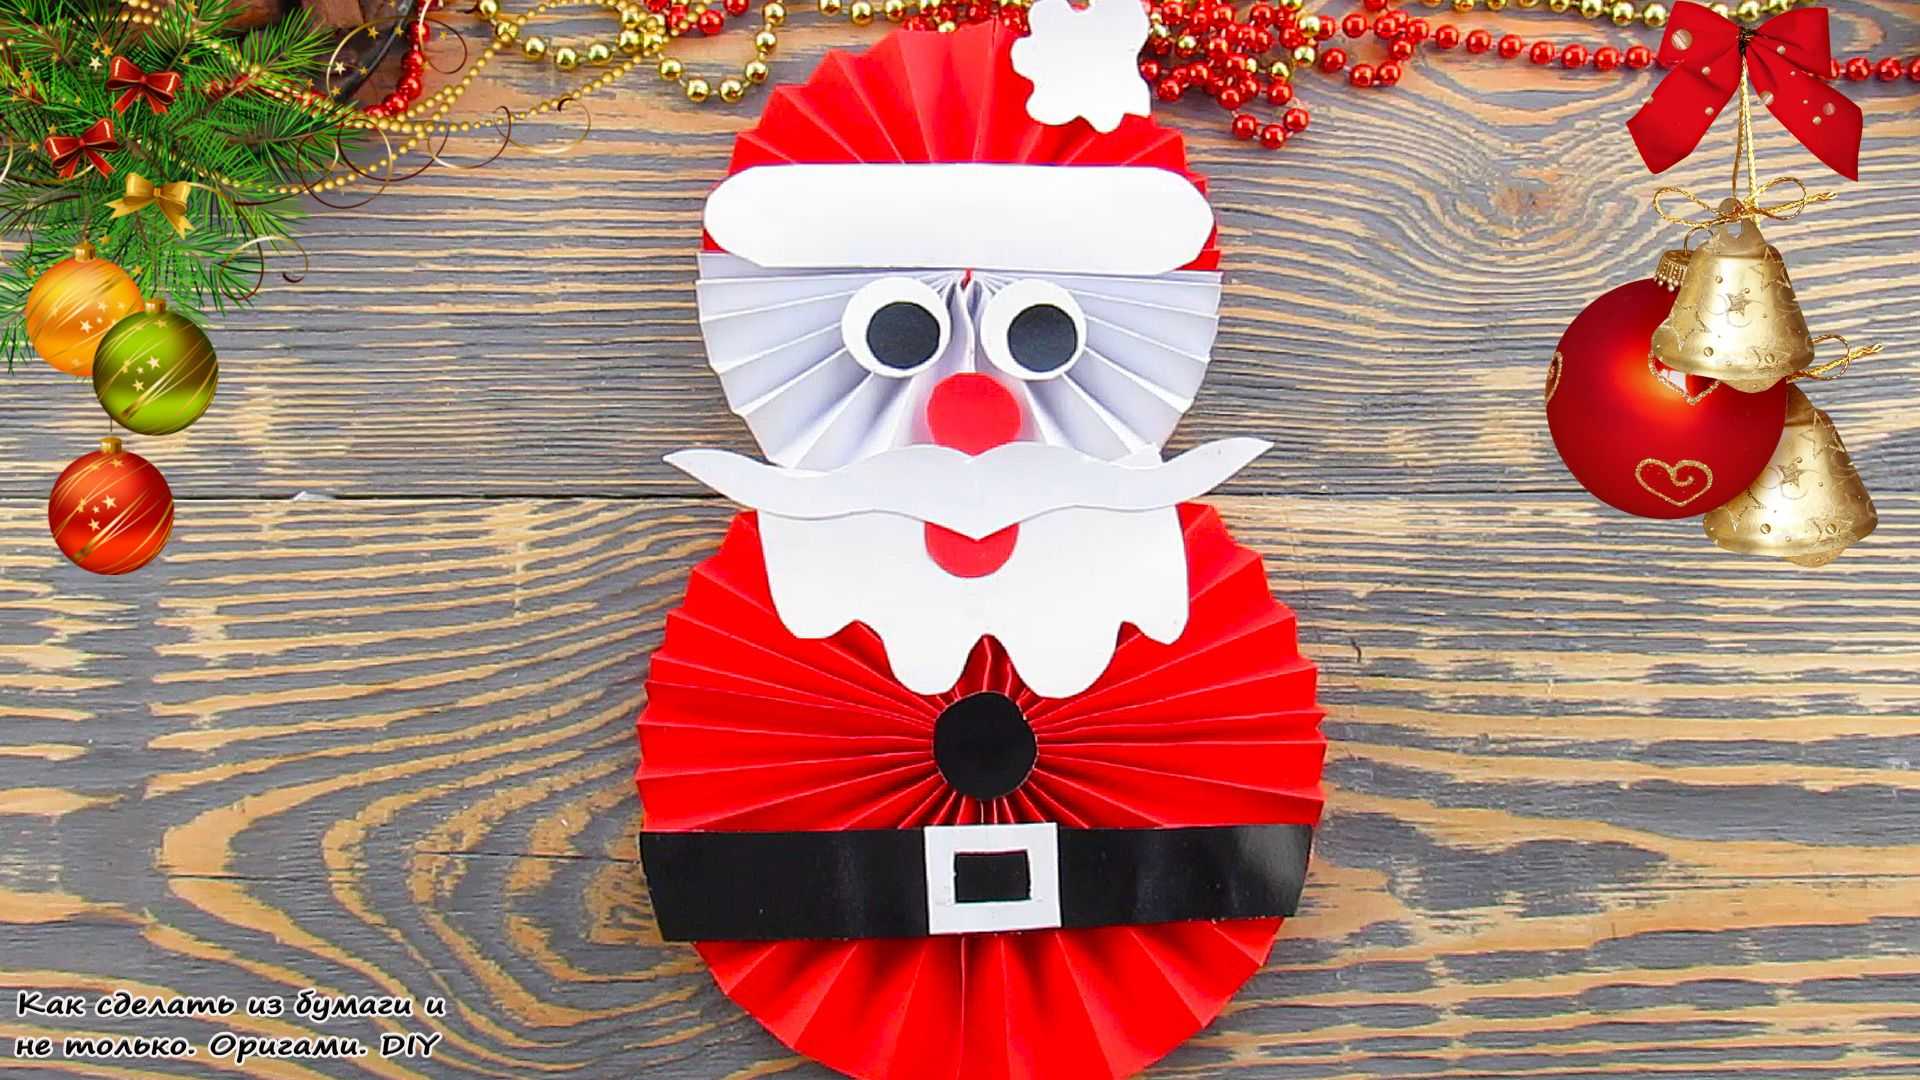 Дед Мороз: игрушка на елку своими руками Пошаговый мастер-класс в фотографиями Развитие смекалки и художественного творчества детей